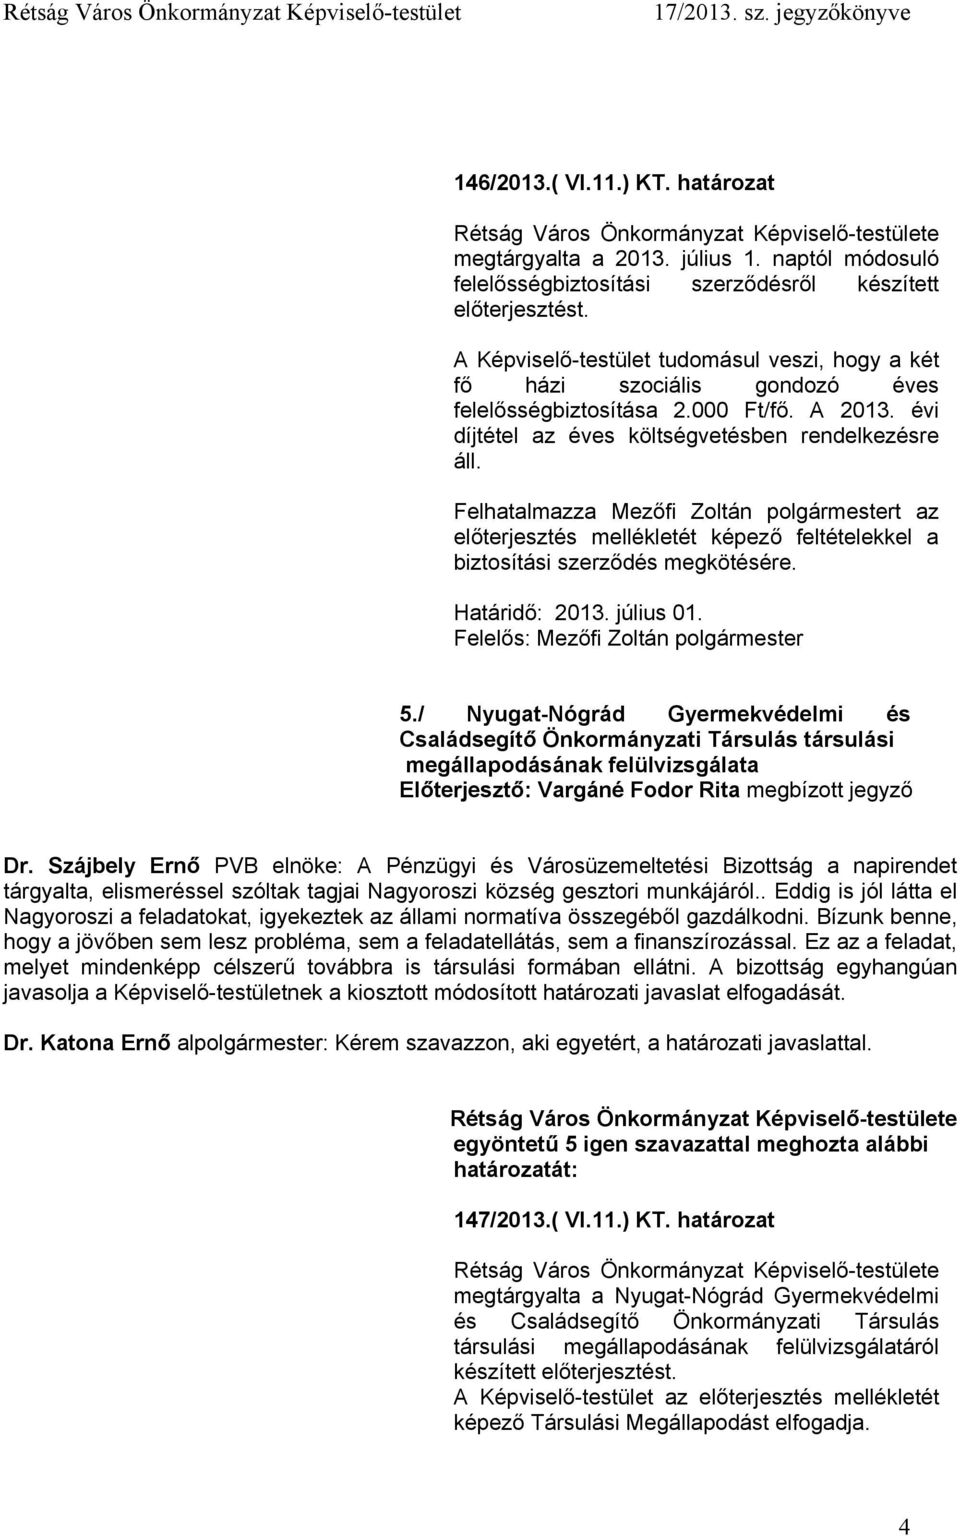 Felhatalmazza Mezőfi Zoltán polgármestert az előterjesztés mellékletét képező feltételekkel a biztosítási szerződés megkötésére. Határidő: 2013. július 01. 5.